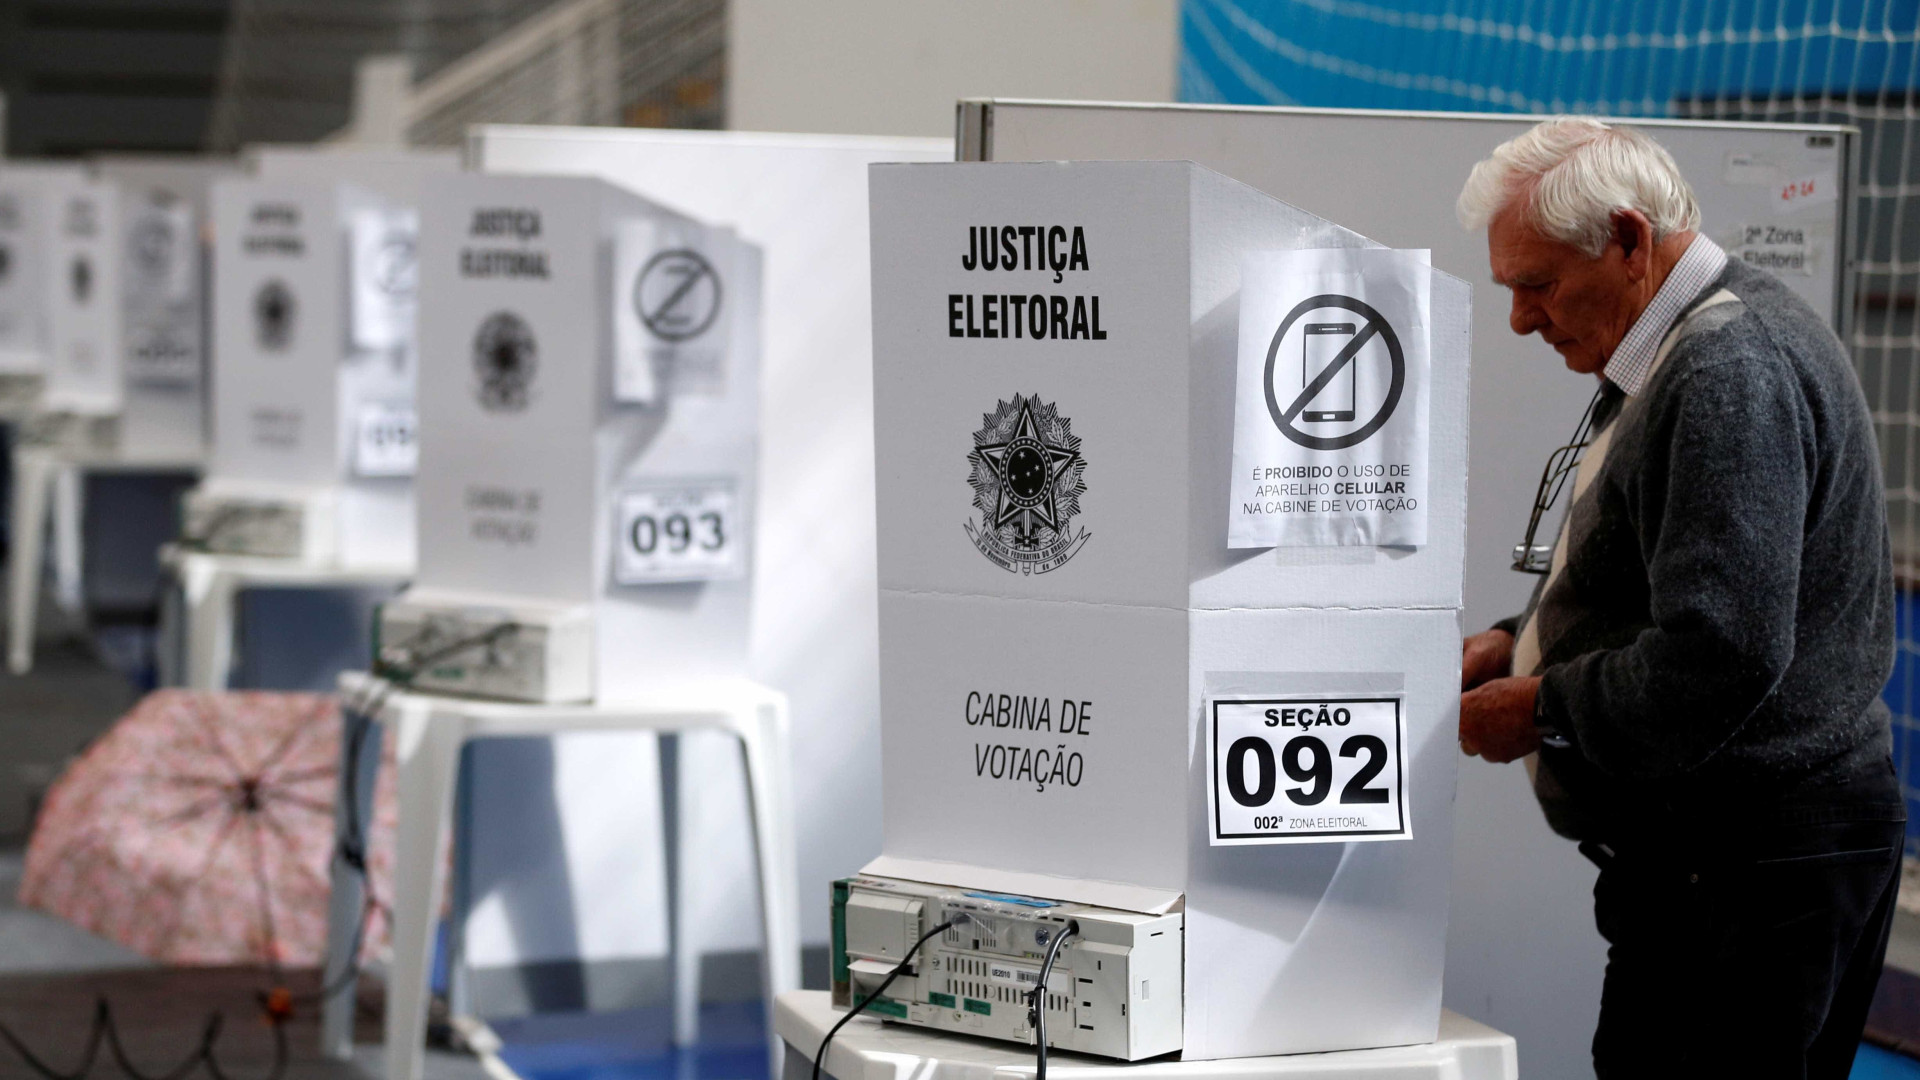 Votação no exterior pode ter comparecimento recorde, diz Itamaraty